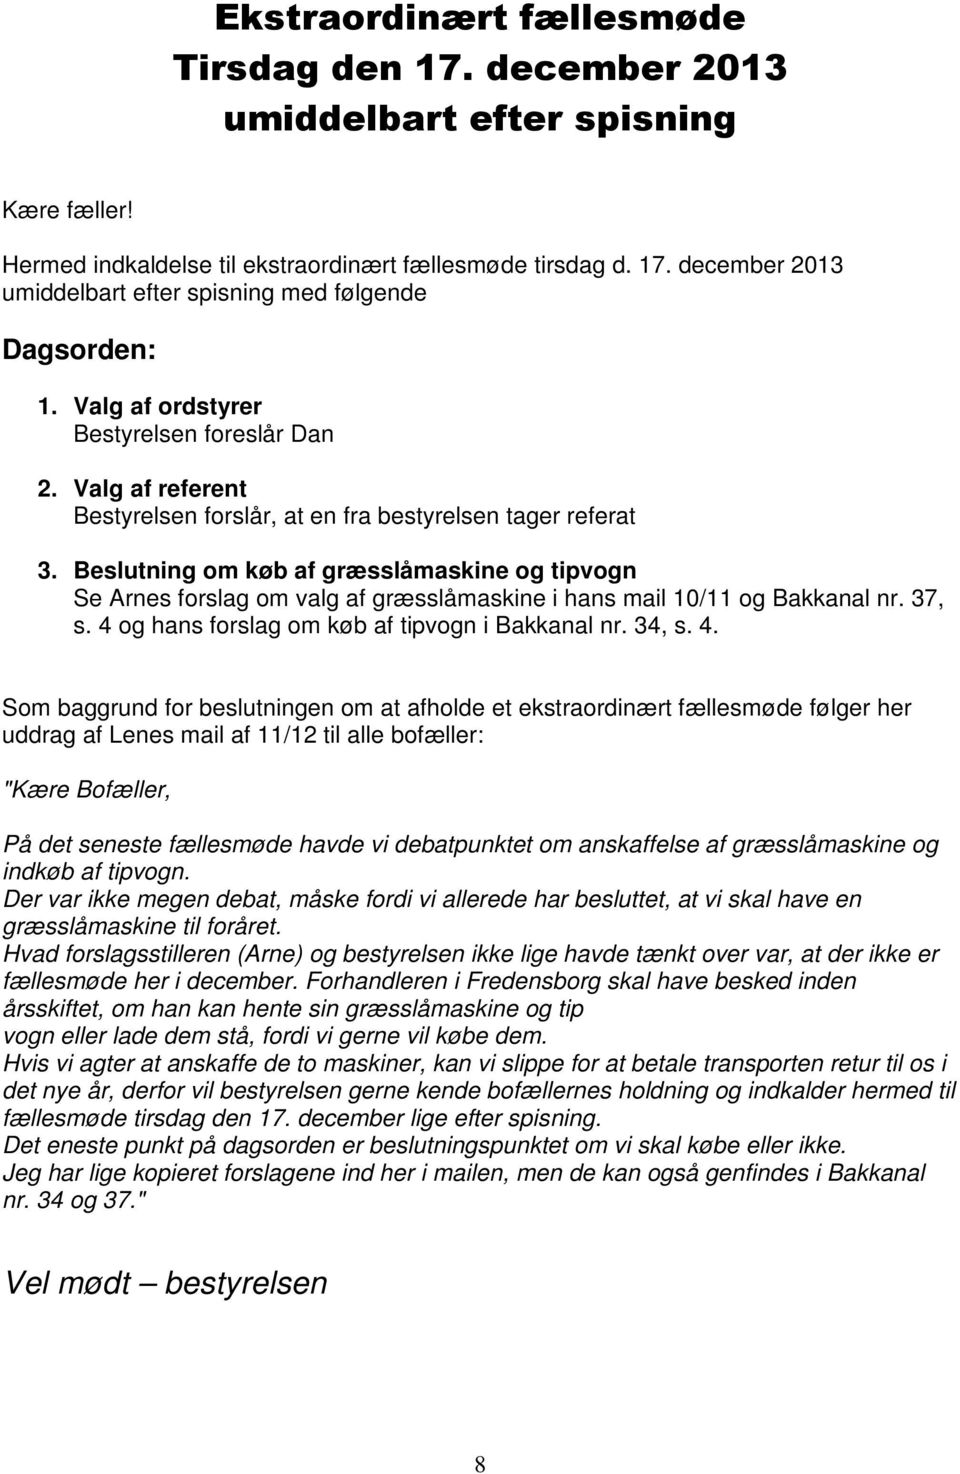 Beslutning om køb af græsslåmaskine og tipvogn Se Arnes forslag om valg af græsslåmaskine i hans mail 10/11 og Bakkanal nr. 37, s. 4 